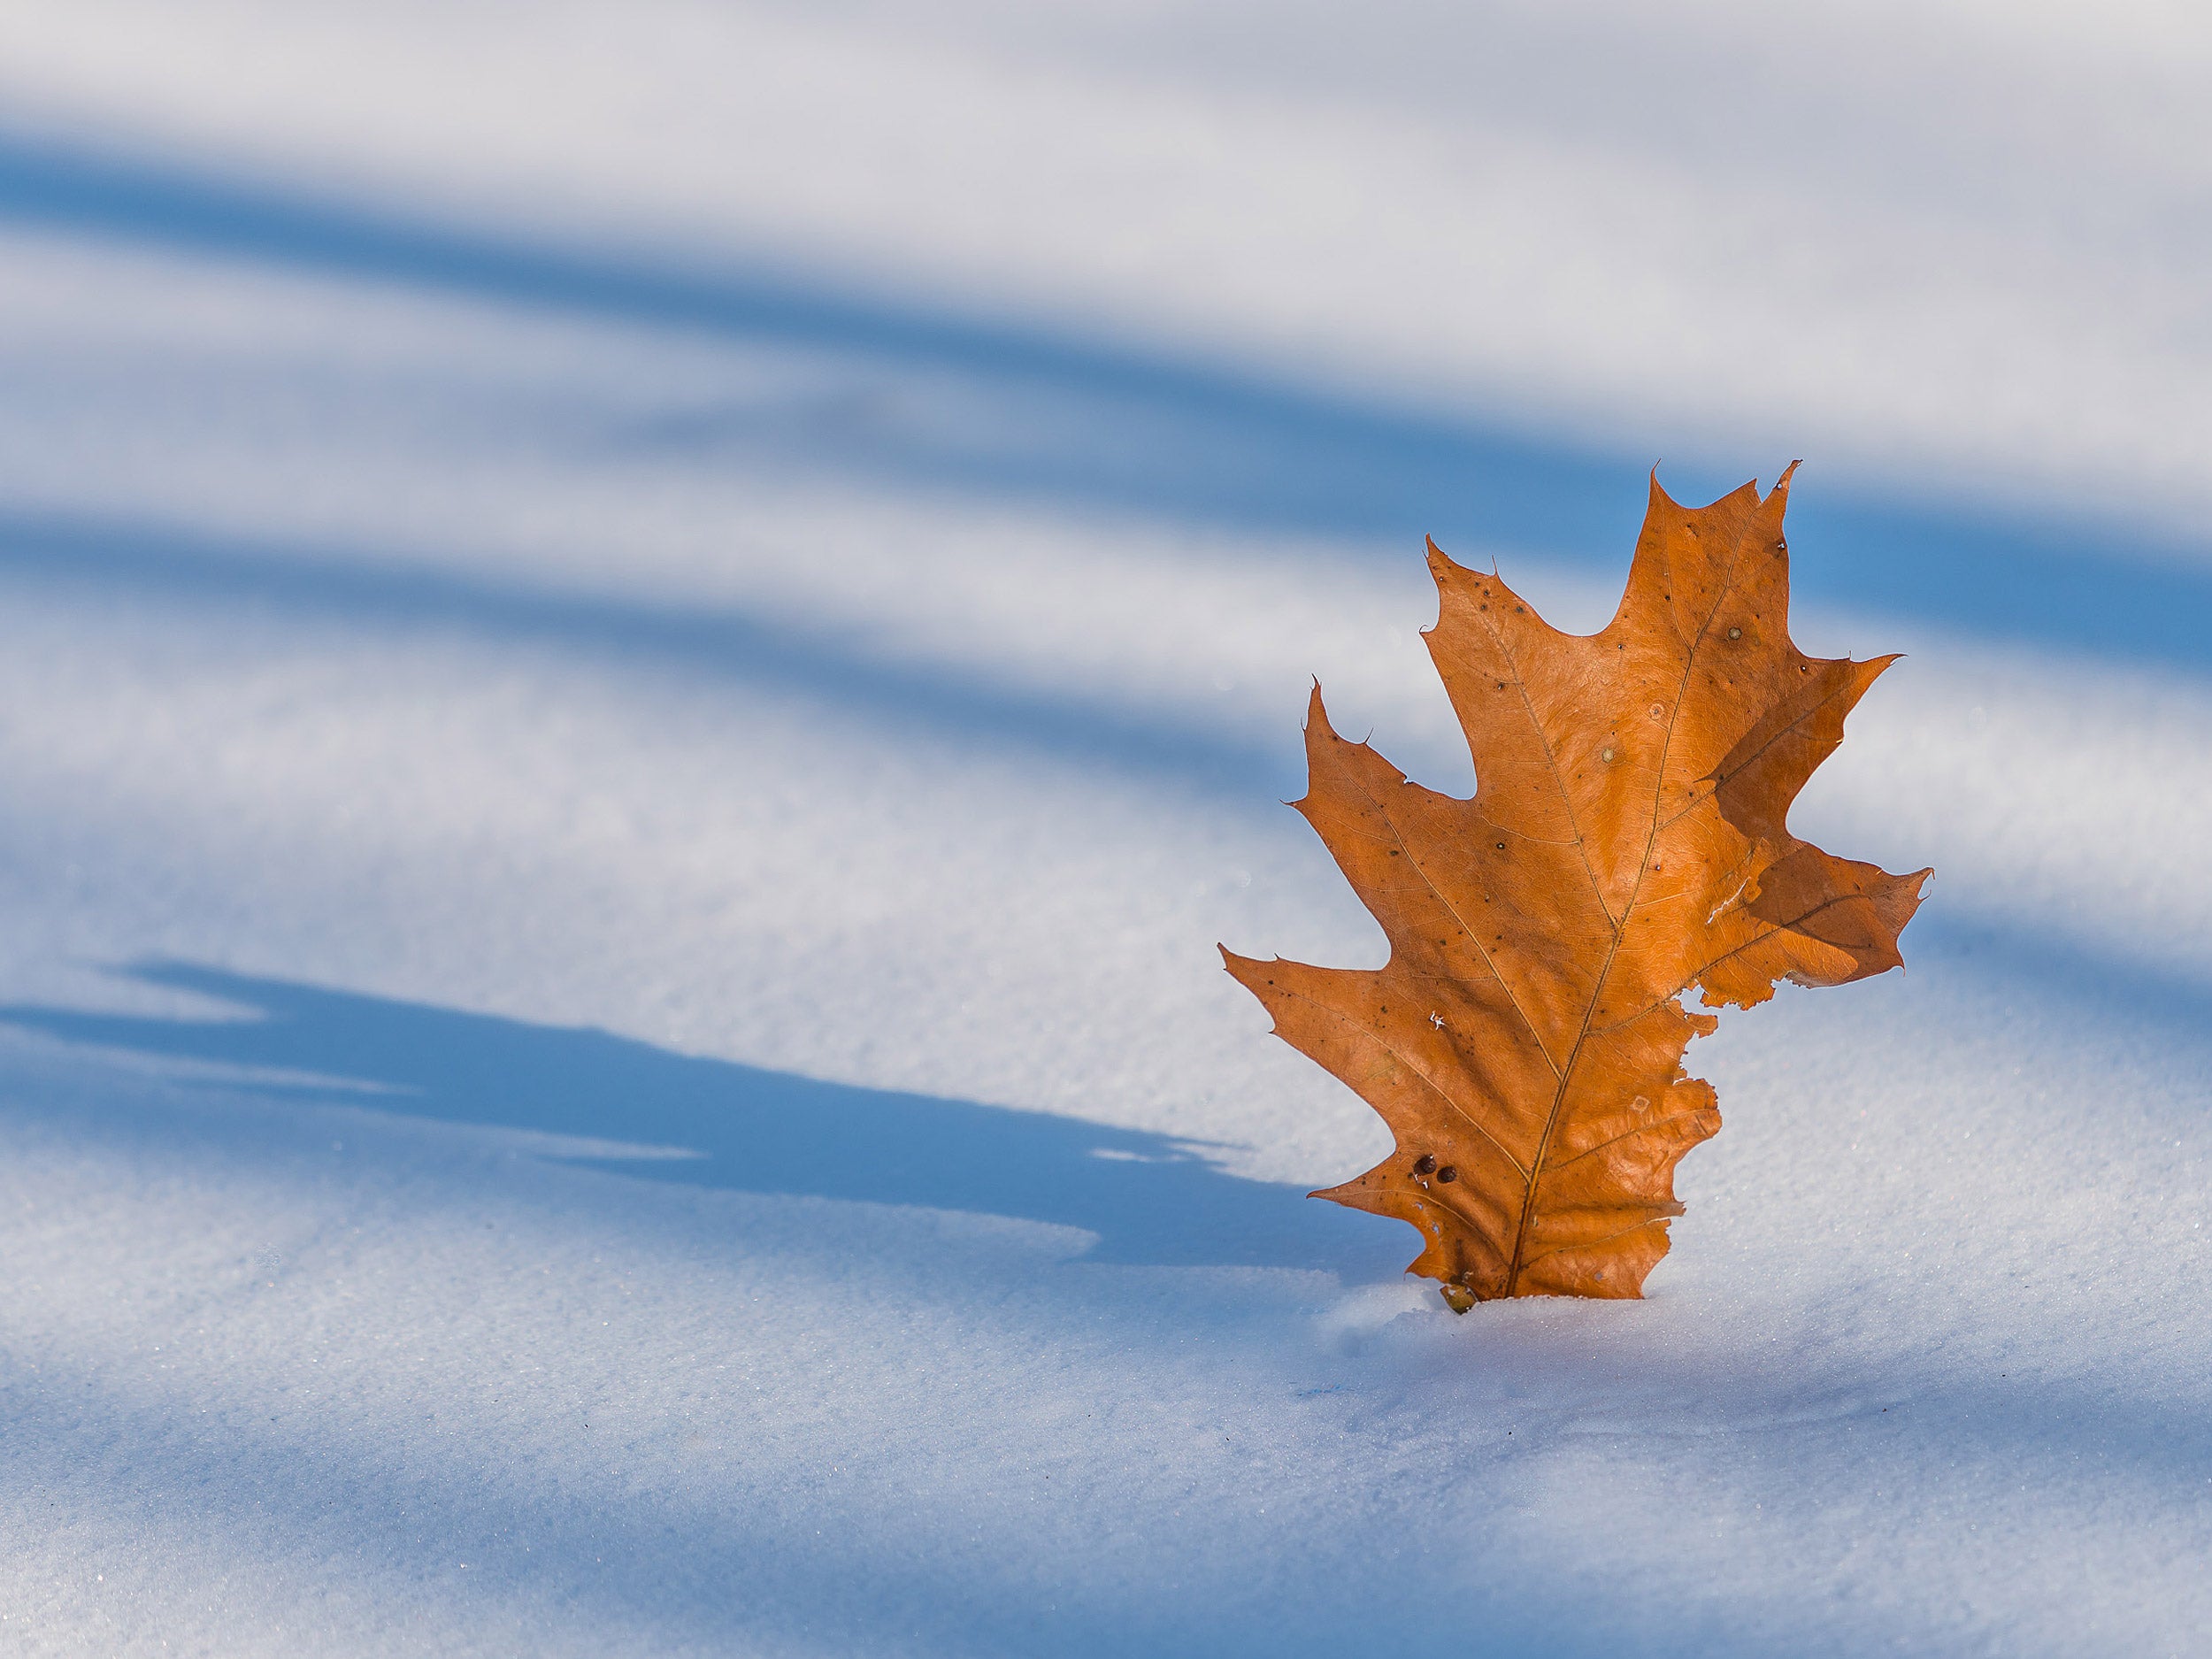 Oak leaf on snow.